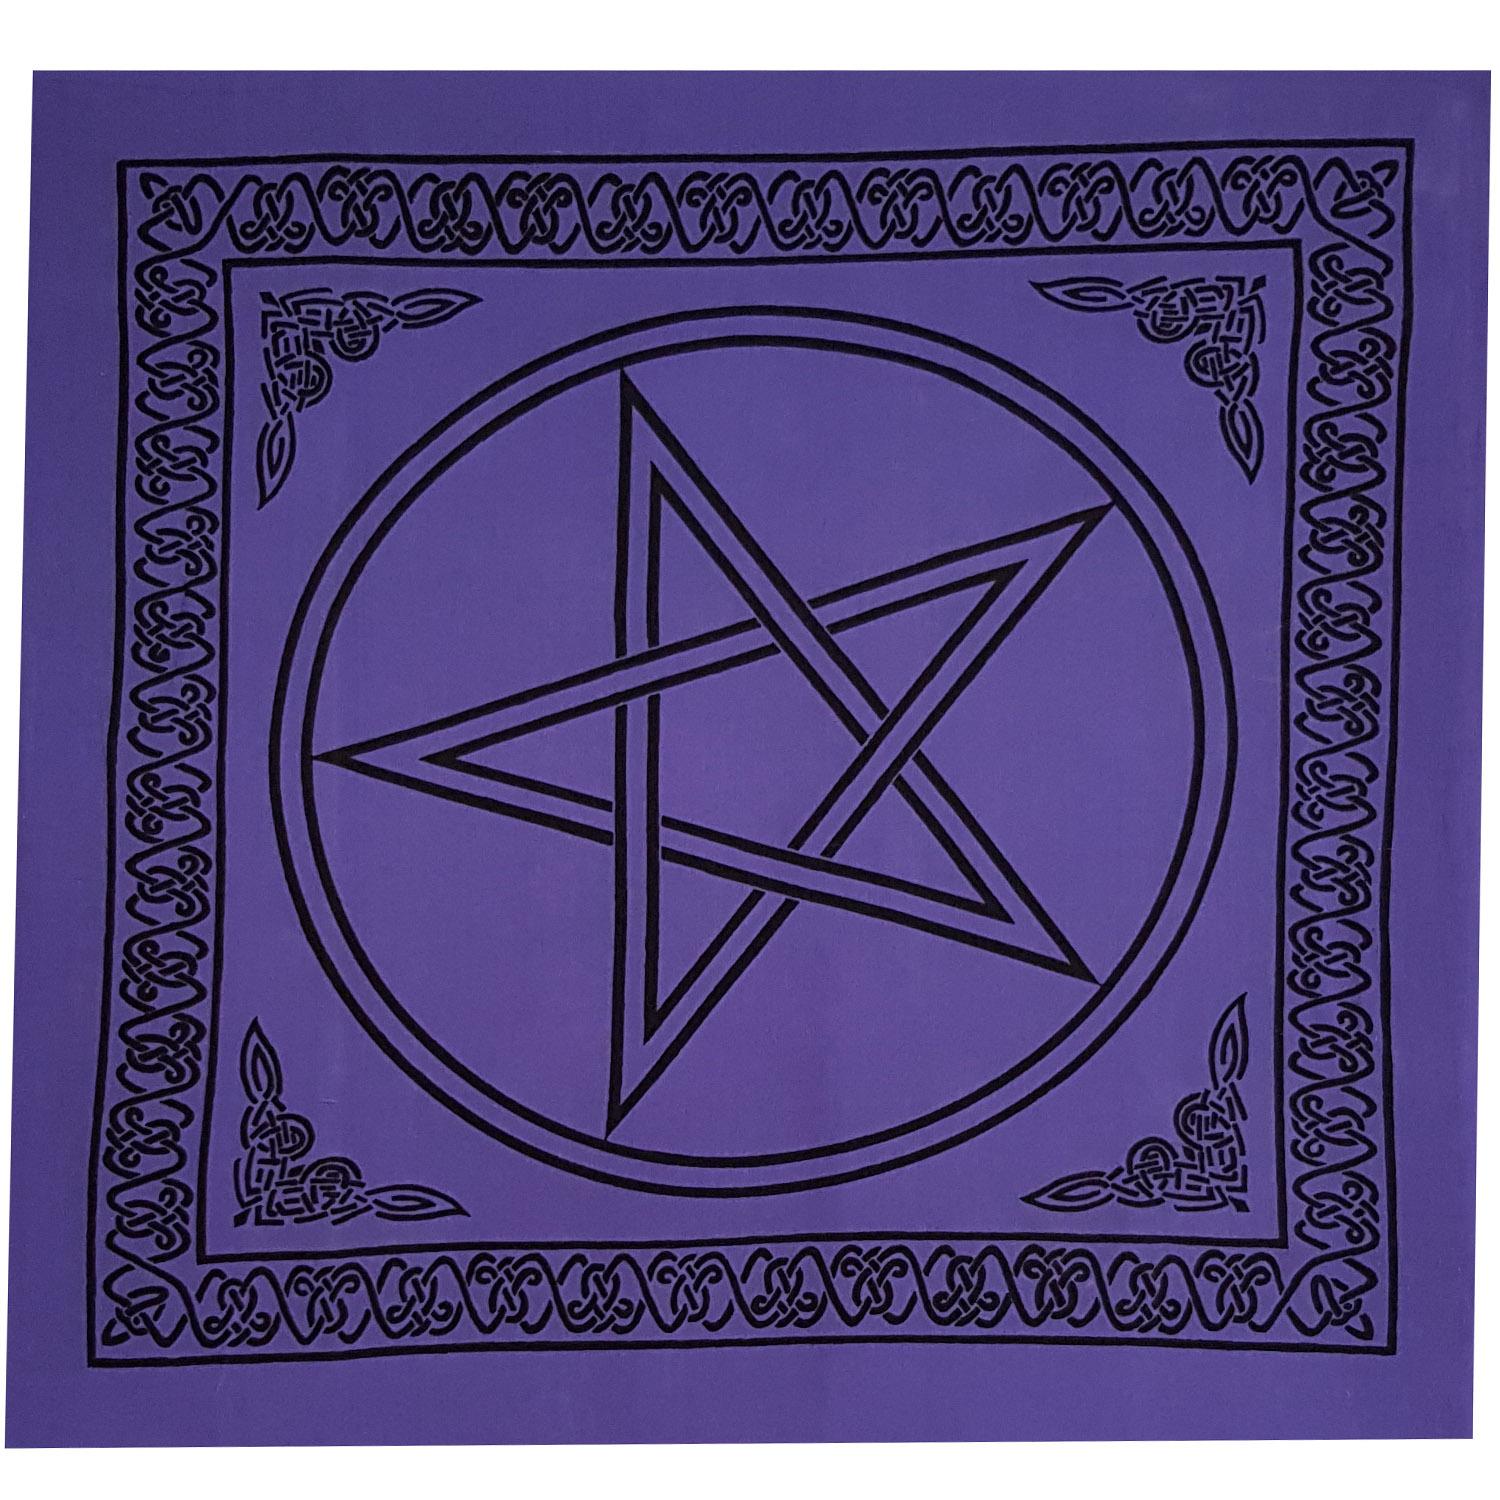 Pentagram Altar Cloth